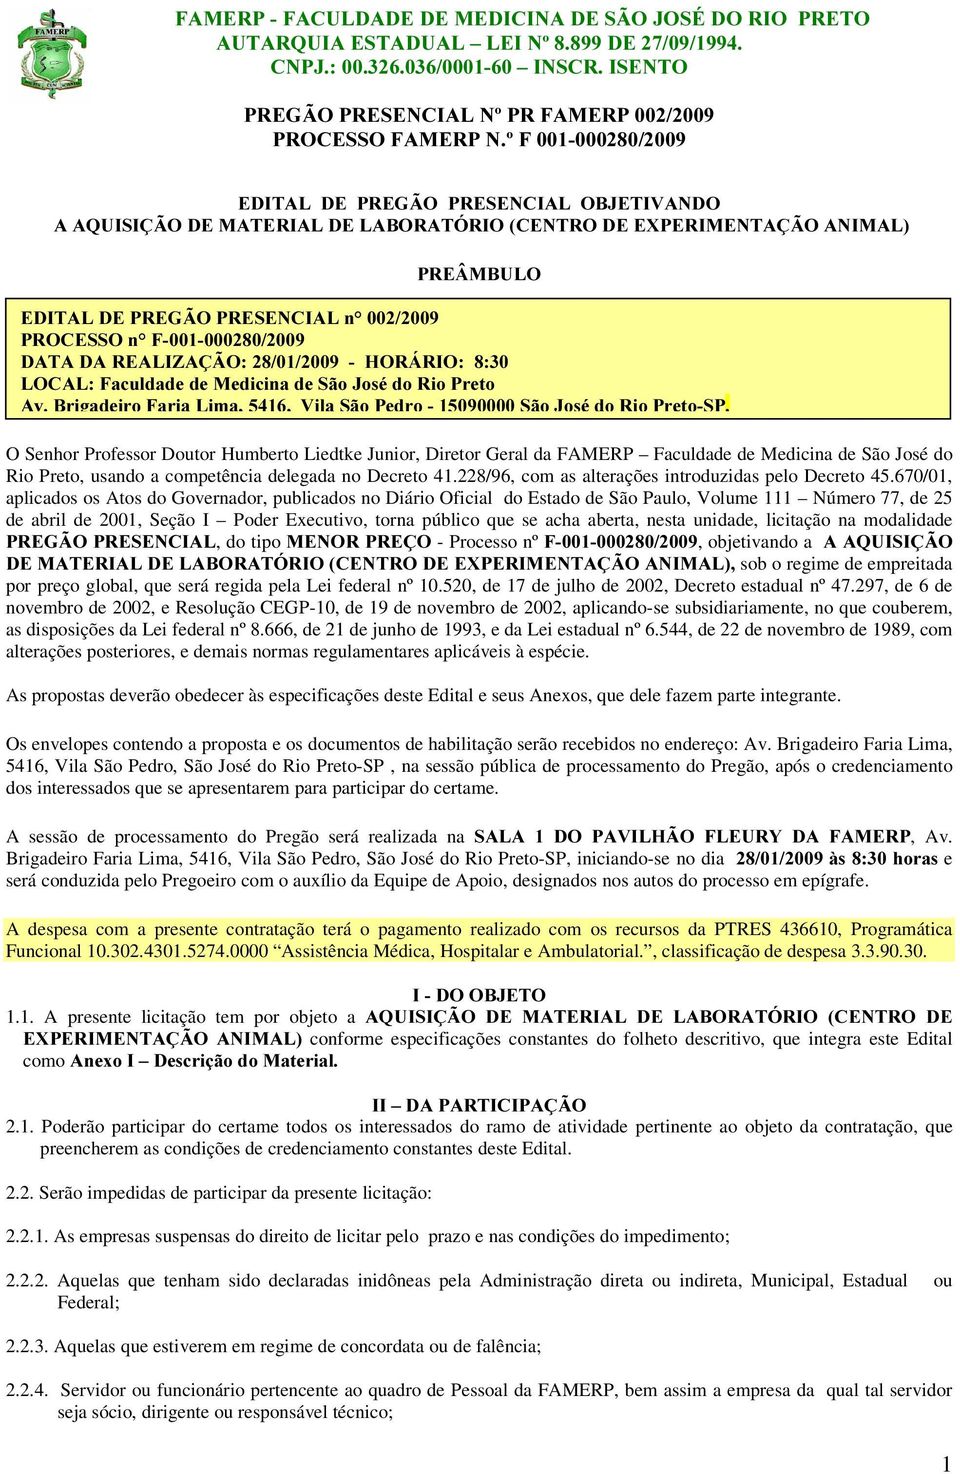 São José do Rio Preto, usando a competência delegada no Decreto 41.228/96, com as alterações introduzidas pelo Decreto 45.